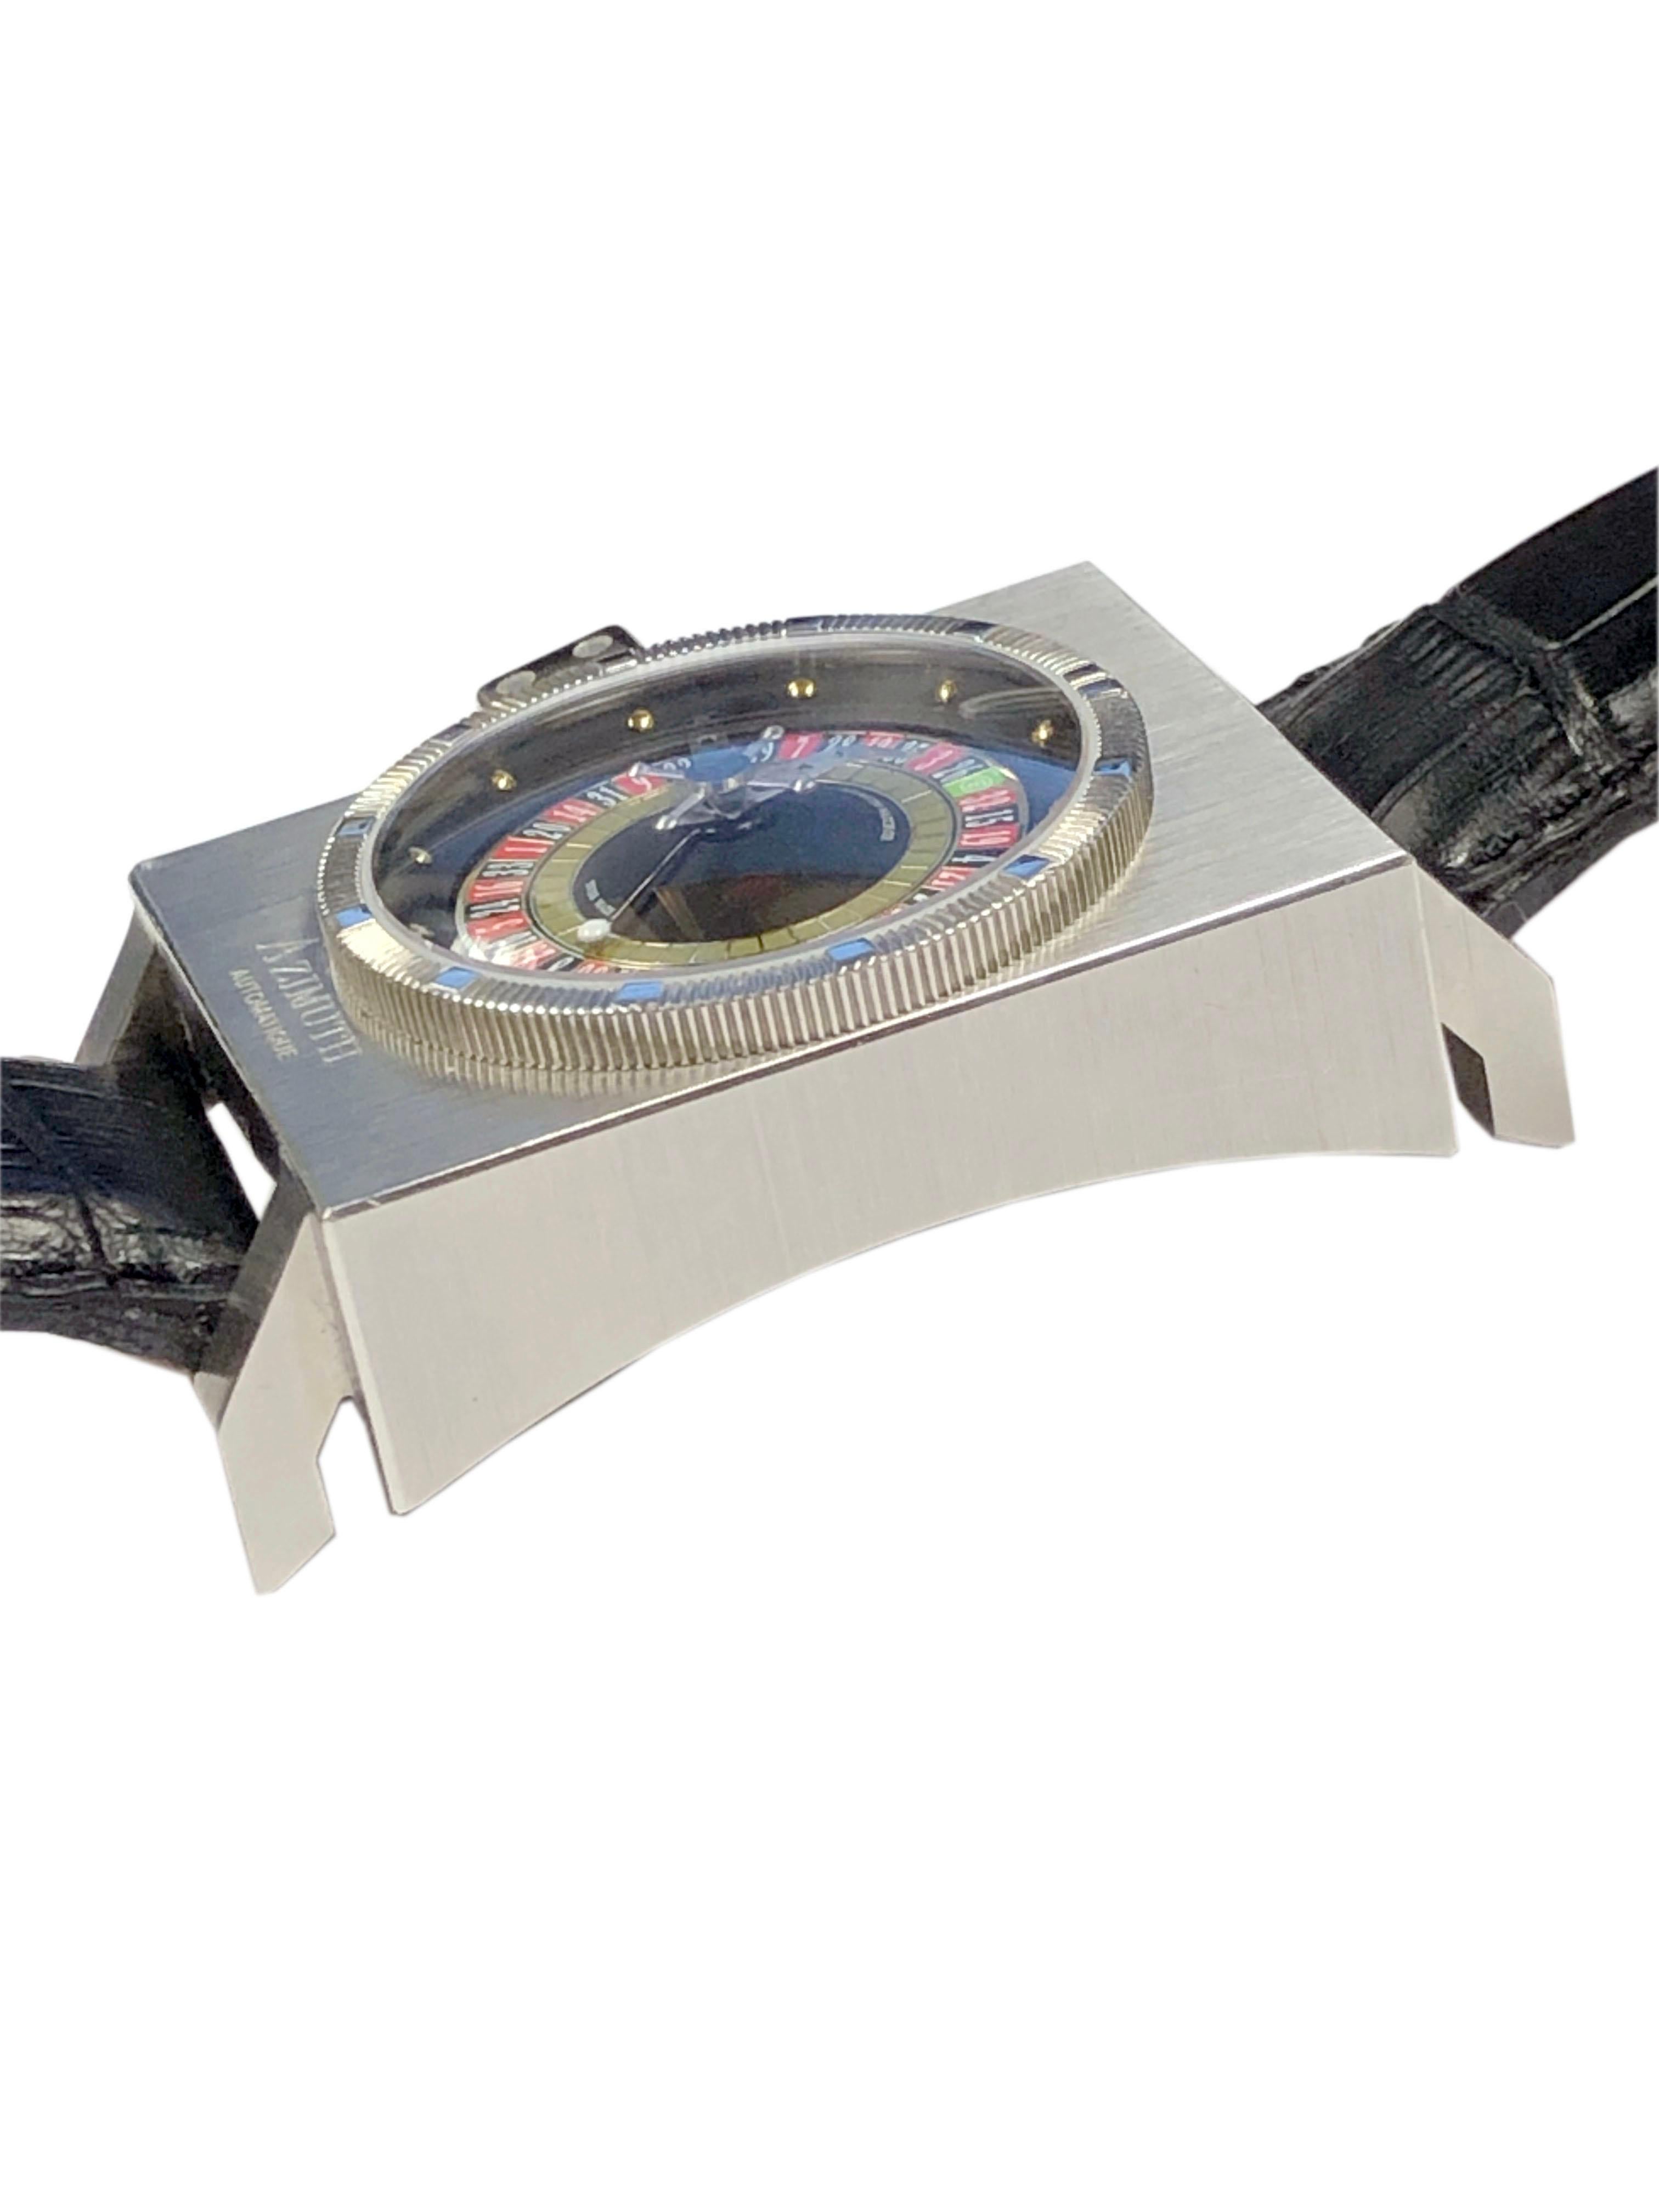 CIRCA 2010 Azimut SP 1  King Casino Roulette Armbanduhr, 56 x 35 x 12 mm Edelstahlgehäuse, wasserdicht, Automatikwerk mit Selbstaufzug, Saphirglas und einzigartiges Roulette-Rad, sich drehendes Mittelelement und einzigartige Würfelkrone. Schwarzes